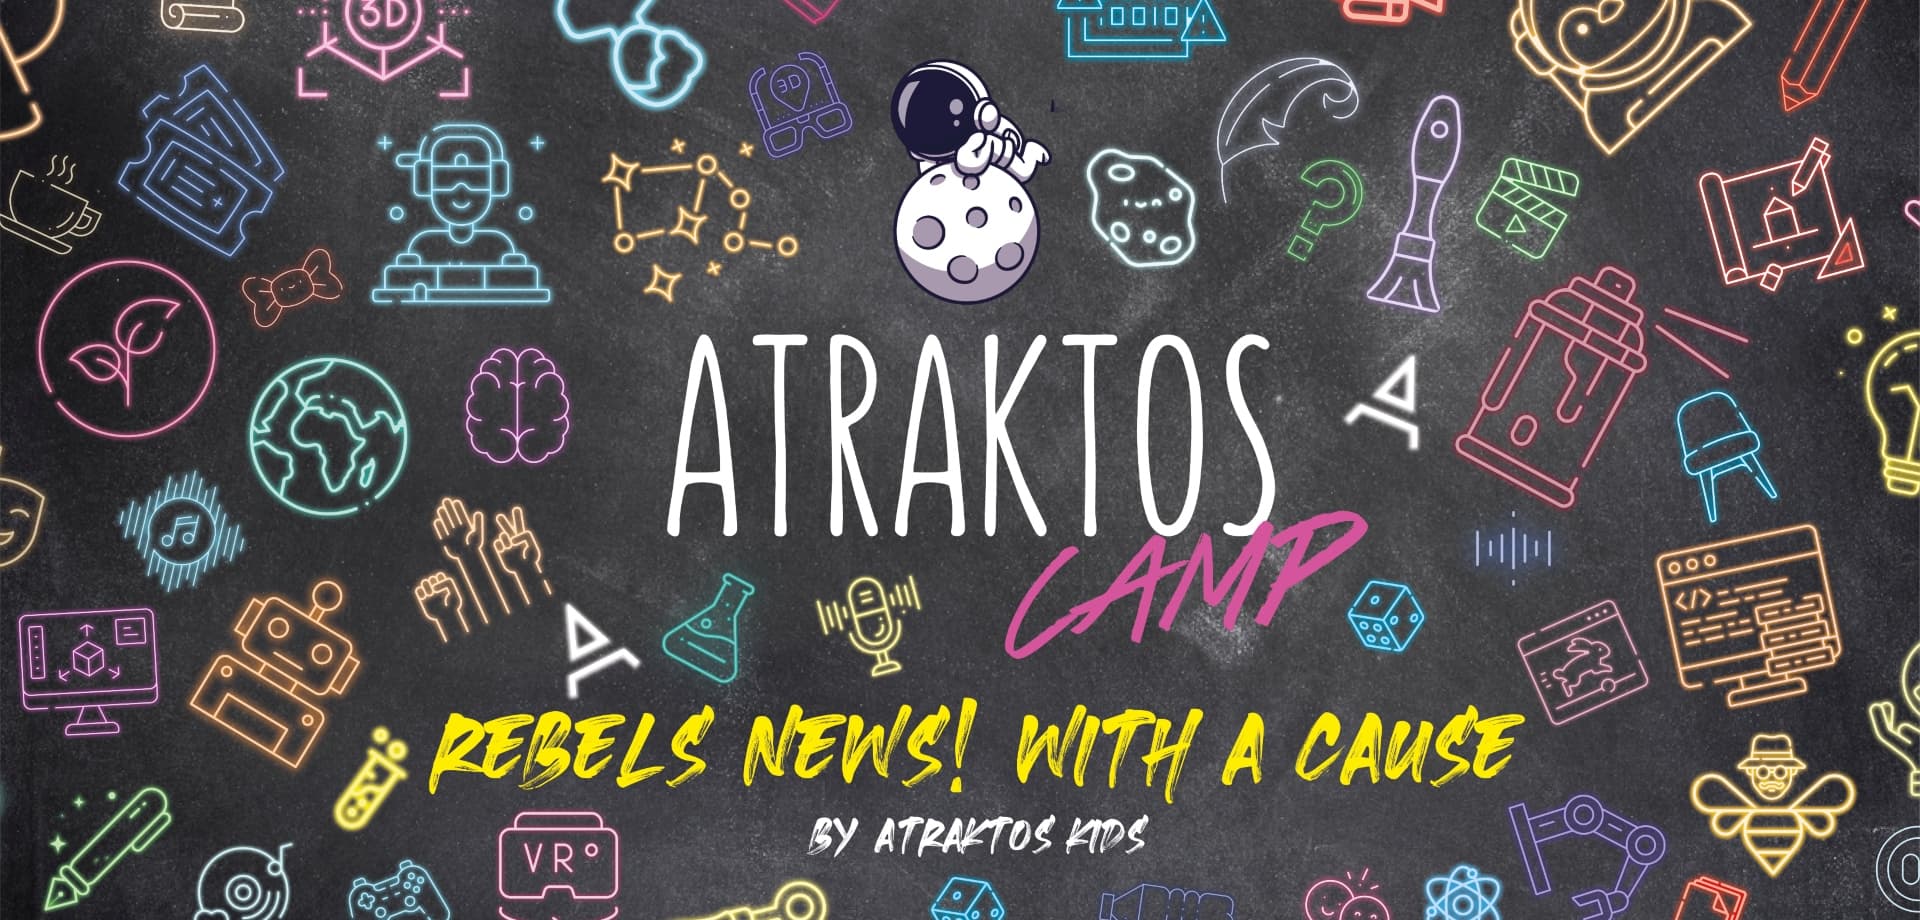 Atraktos Camp 2022 ''Rebels News! with a cause.''